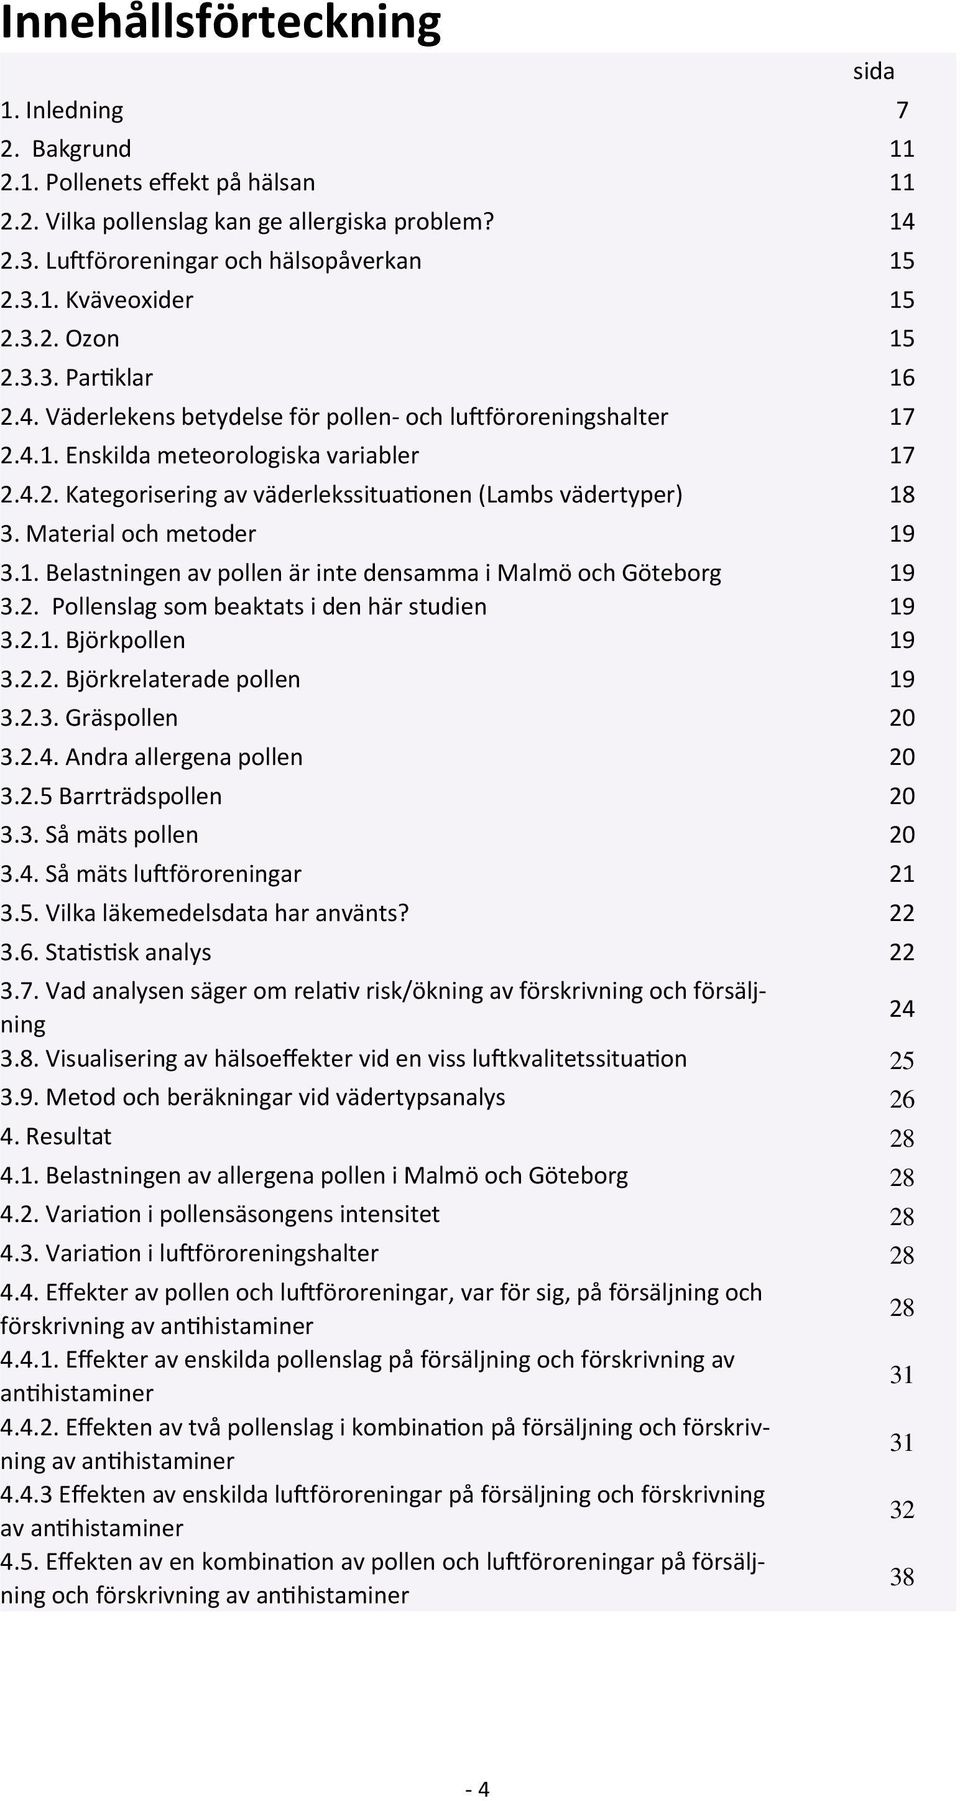 Material och metoder 19 3.1. Belastningen av pollen är inte densamma i Malmö och Göteborg 19 3.2. Pollenslag som beaktats i den här studien 19 3.2.1. Björkpollen 19 3.2.2. Björkrelaterade pollen 19 3.